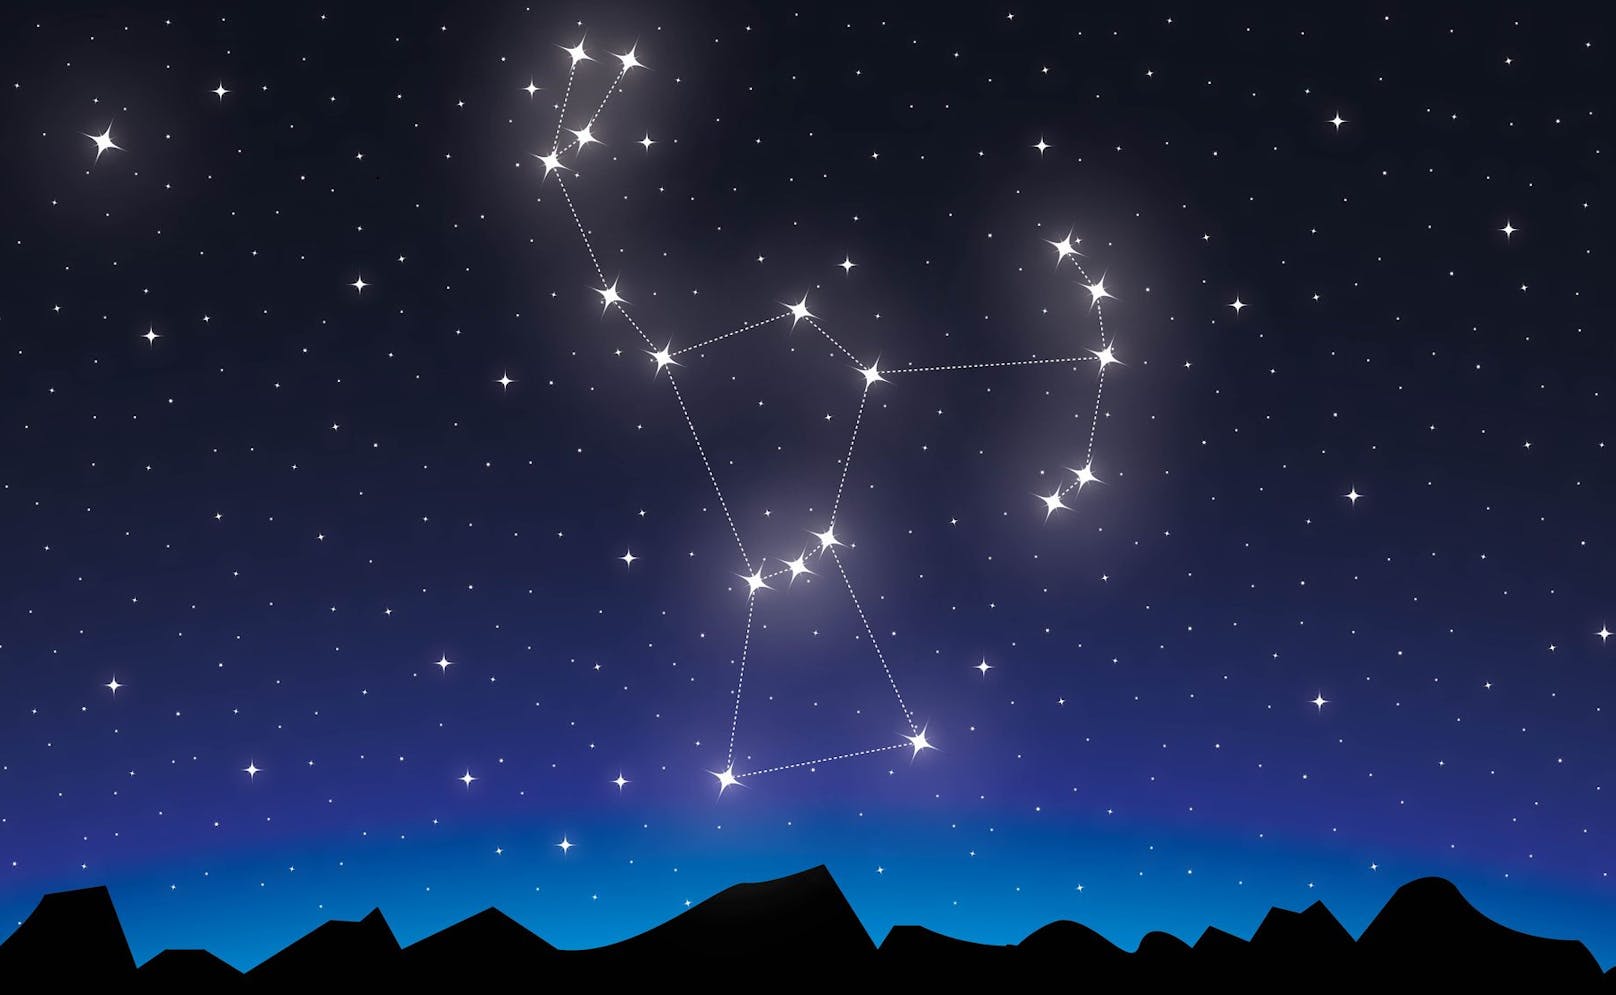 Das Sternbild Orion ist eines der hellsten und bekanntesten Sternbilder am Nachthimmel.